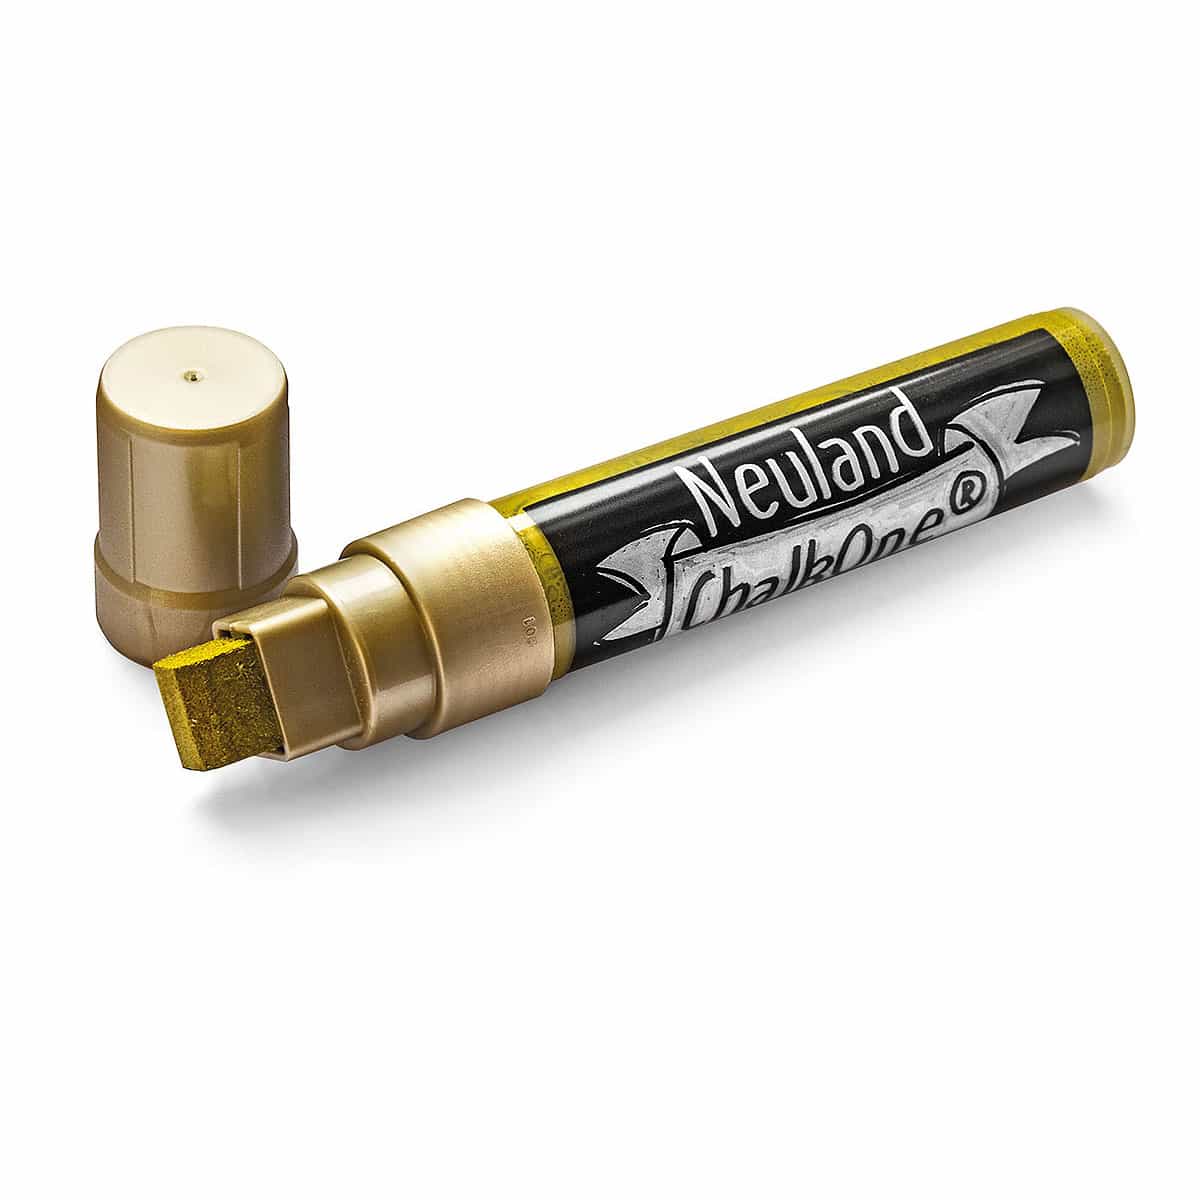 Neuland ChalkOne®, Keilspitze 5-15 mm – Einzelfarben- c554 gold